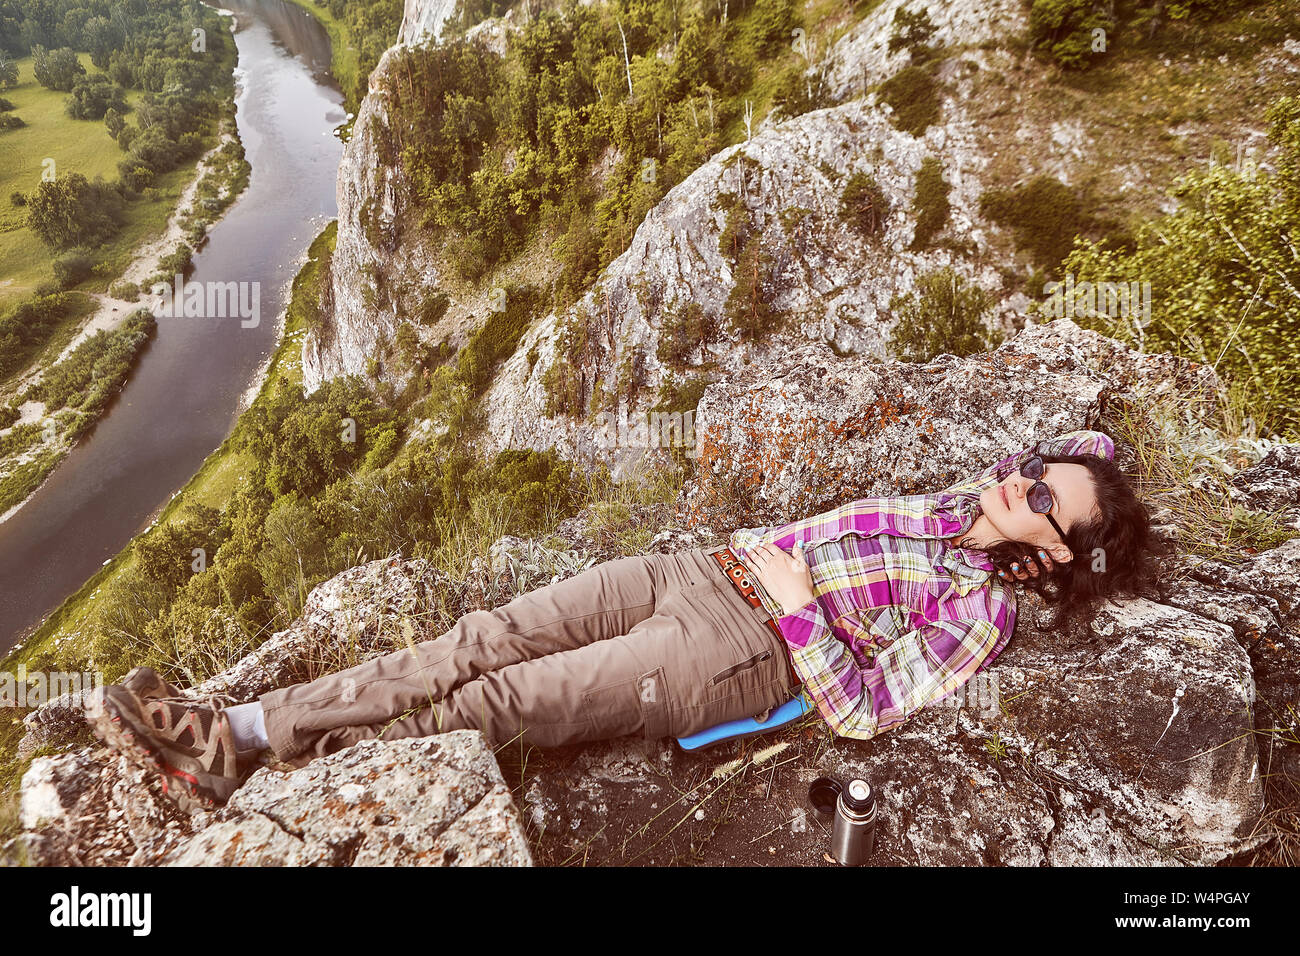 El turismo ecológico en las montañas, una hermosa mujer caucásica descansa en la cima de una montaña, encima de un tranquilo río. Foto de stock